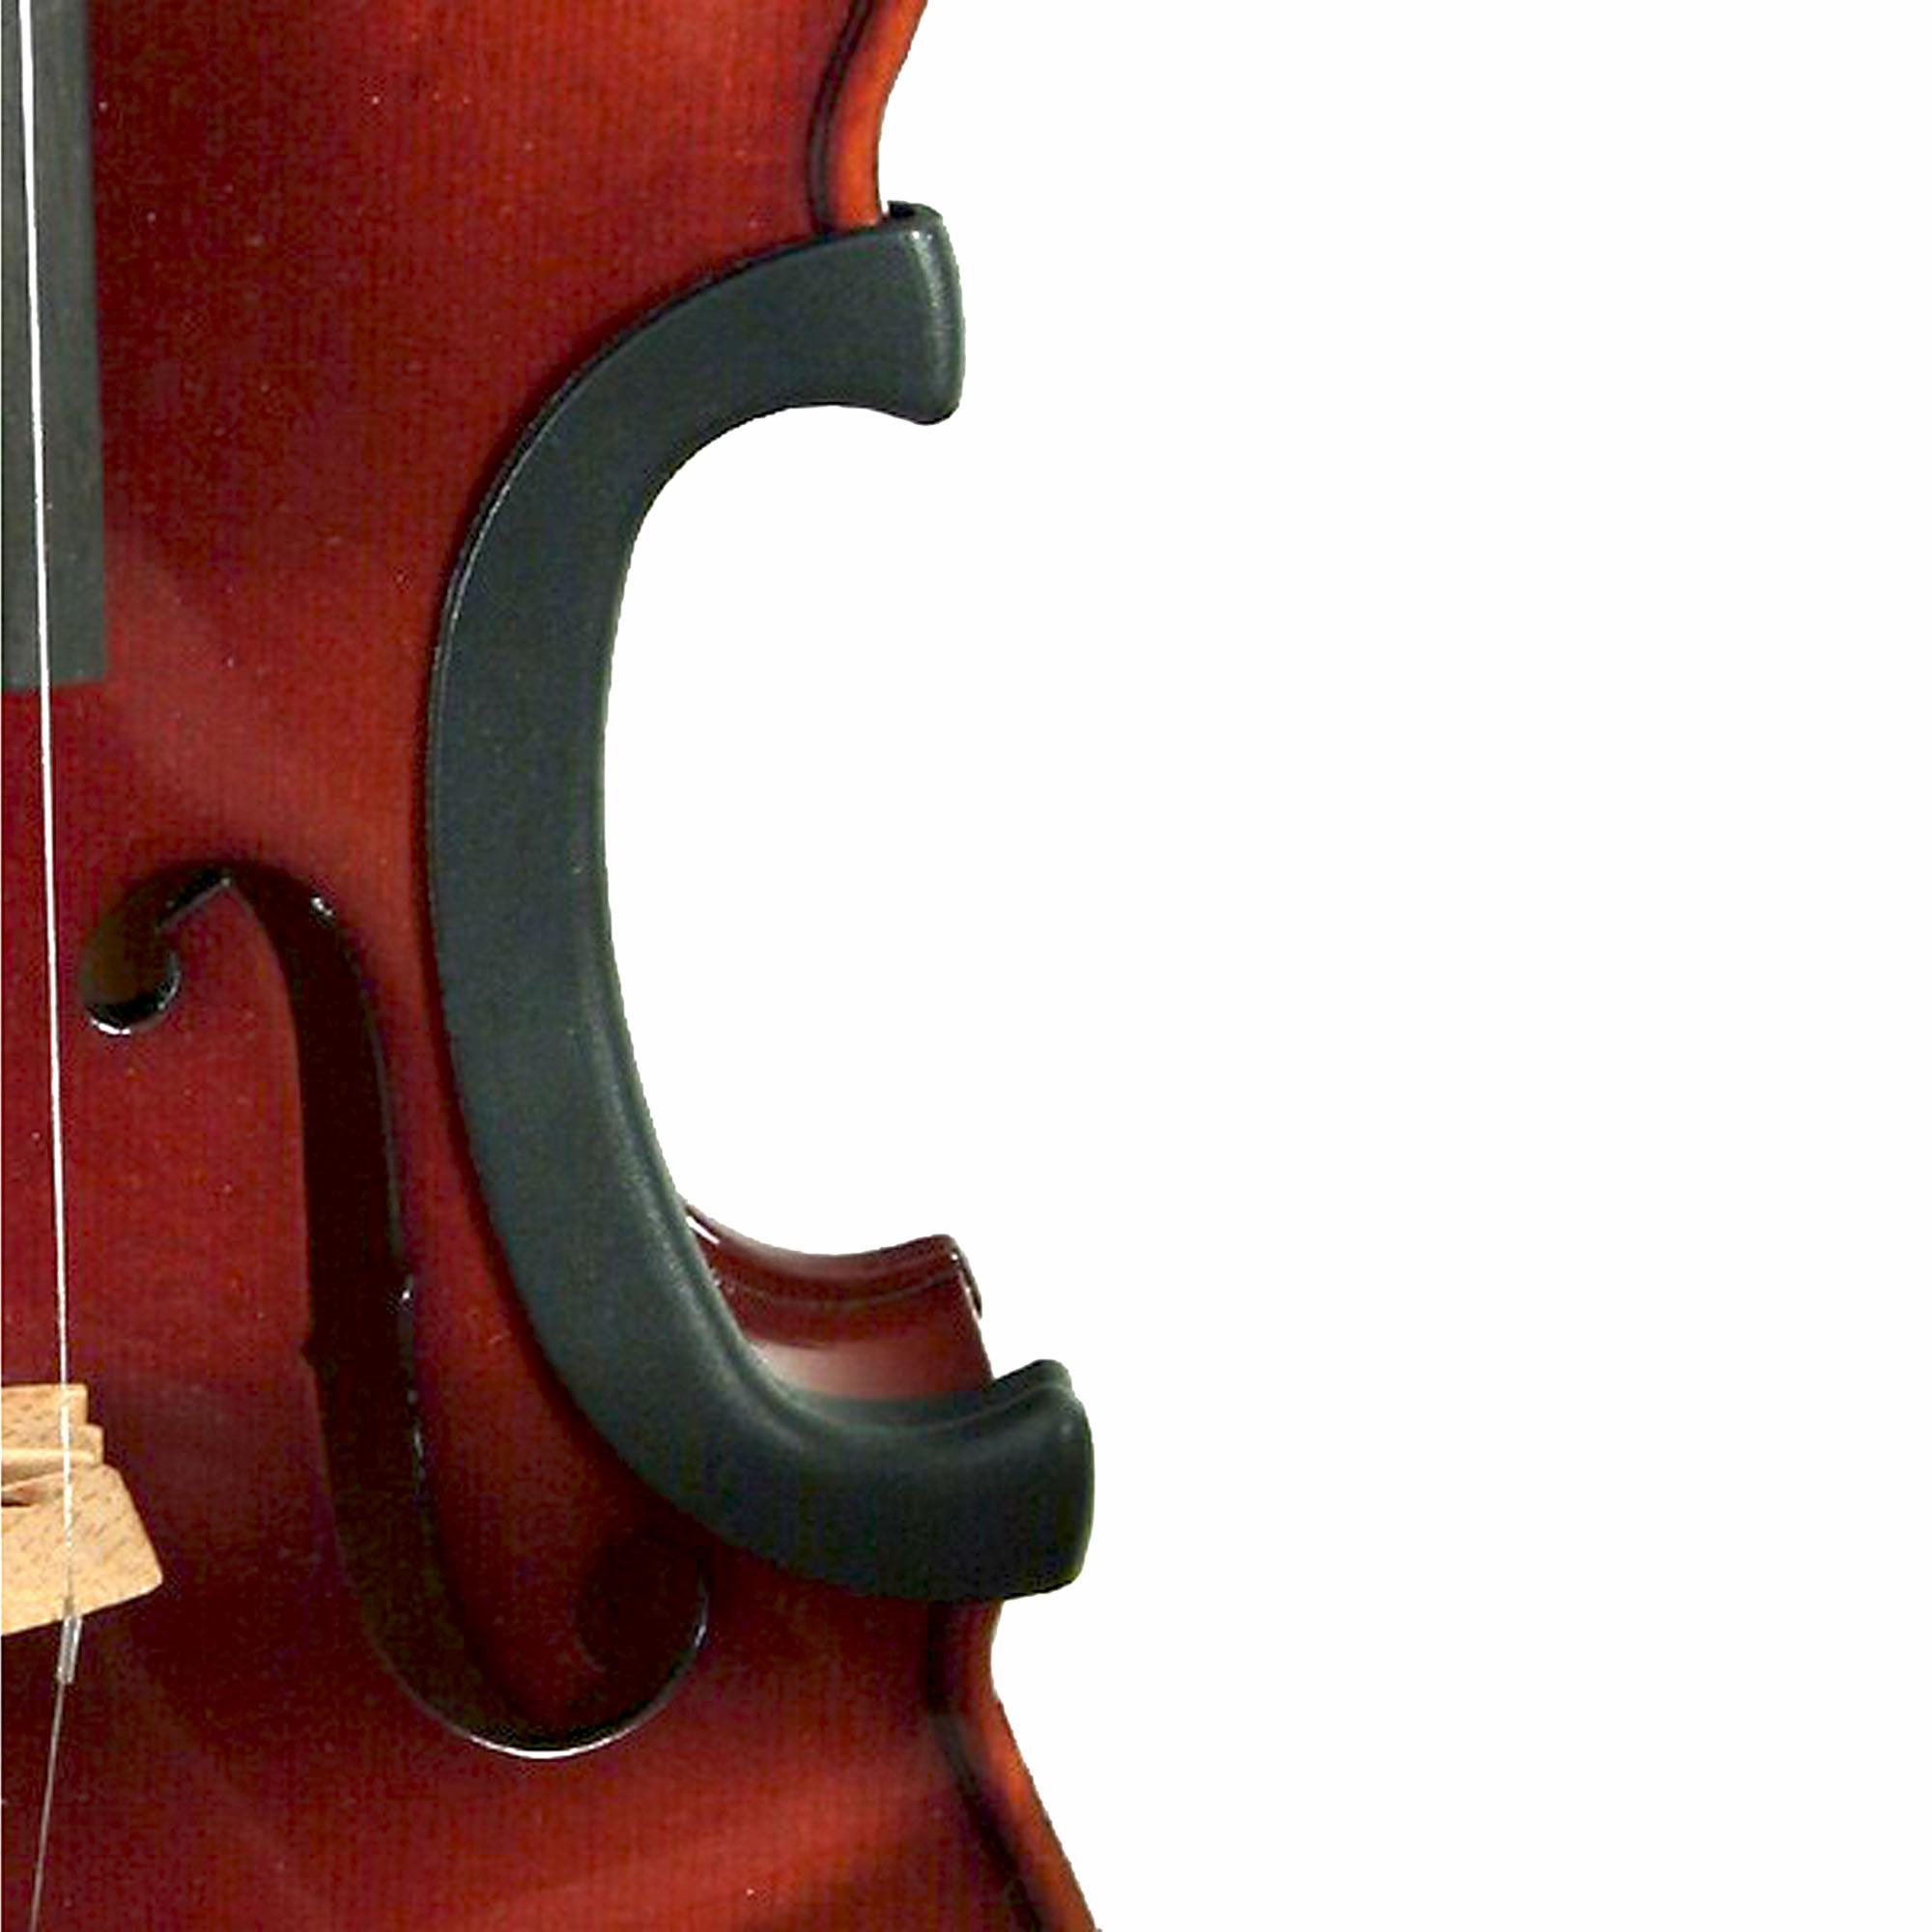 C-Clip Violin